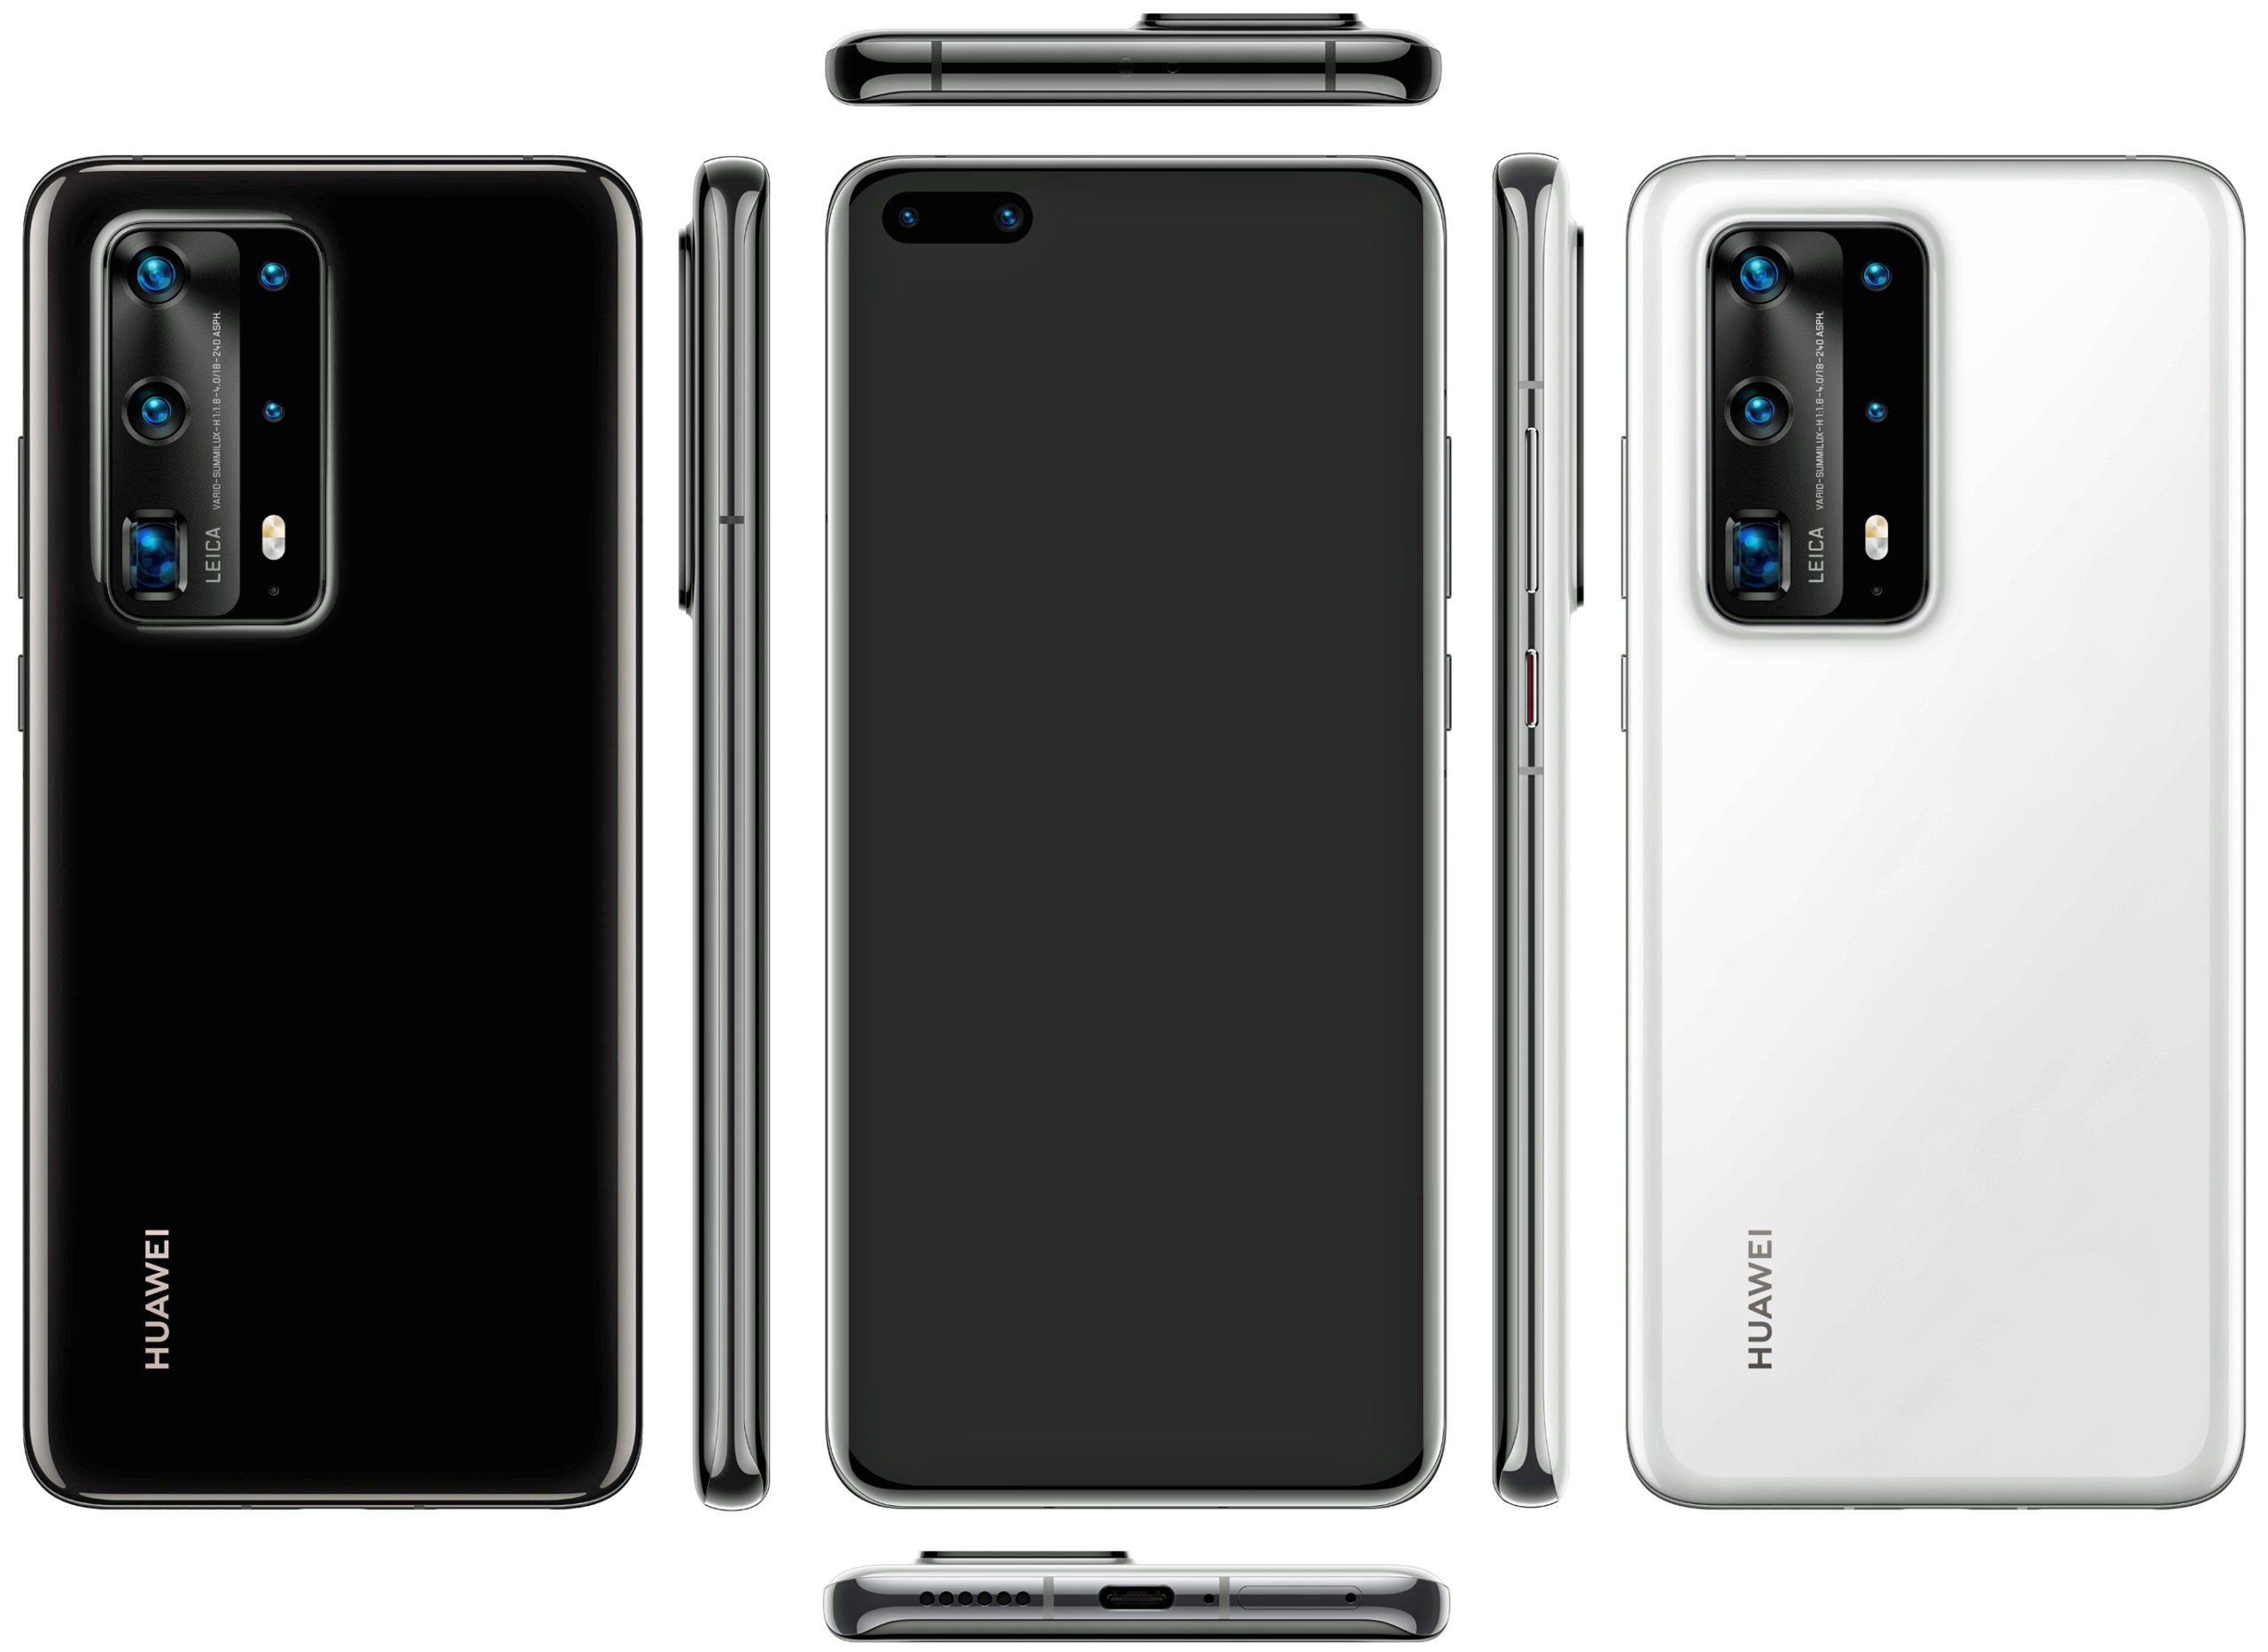 Pregled pametnog telefona Huawei P40 Pro Premium s glavnim karakteristikama